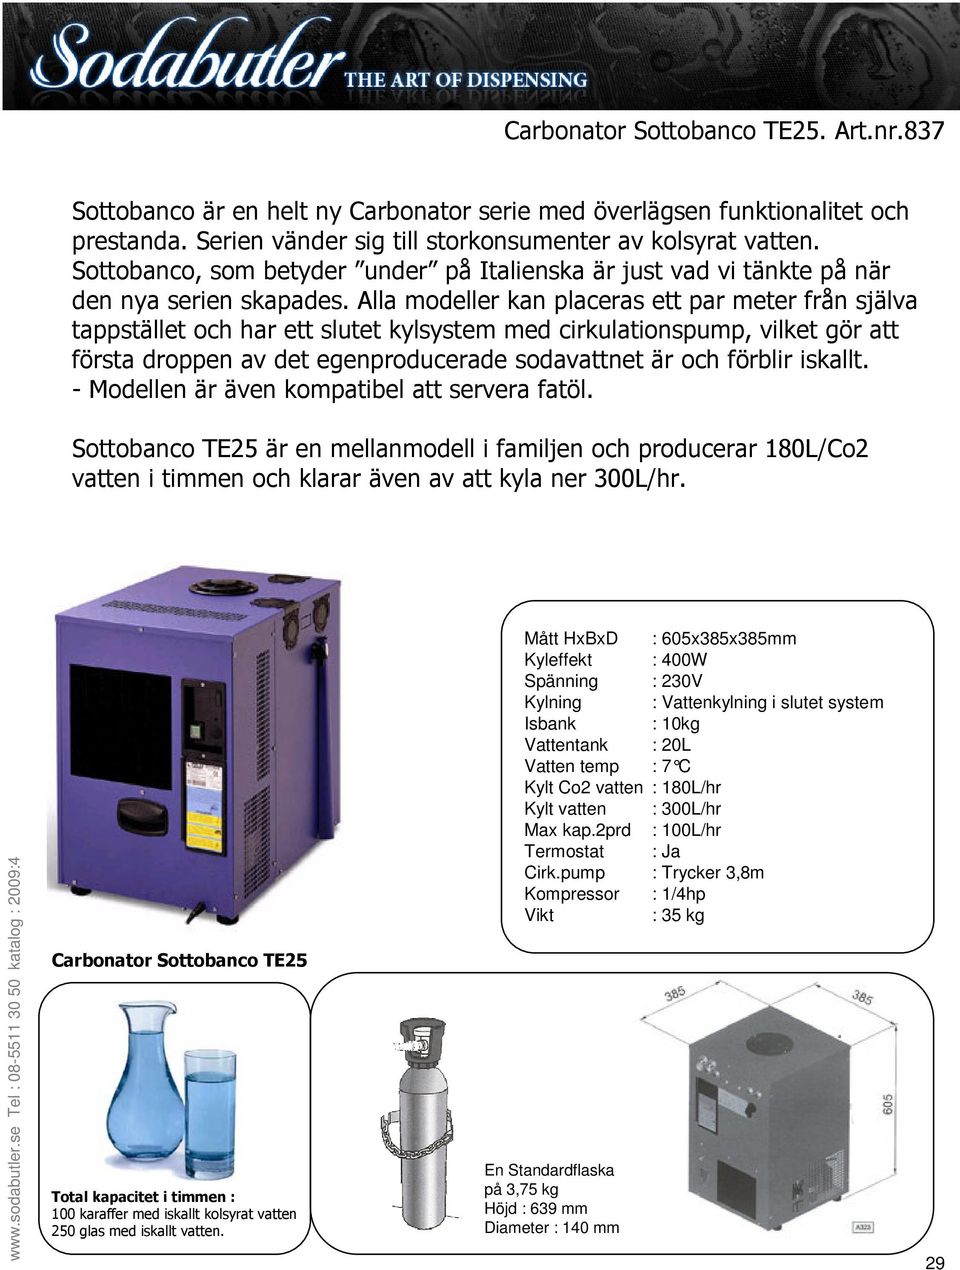 Carbonator Sottobanco TE25 100 karaffer med iskallt kolsyrat vatten 250 glas med iskallt vatten.